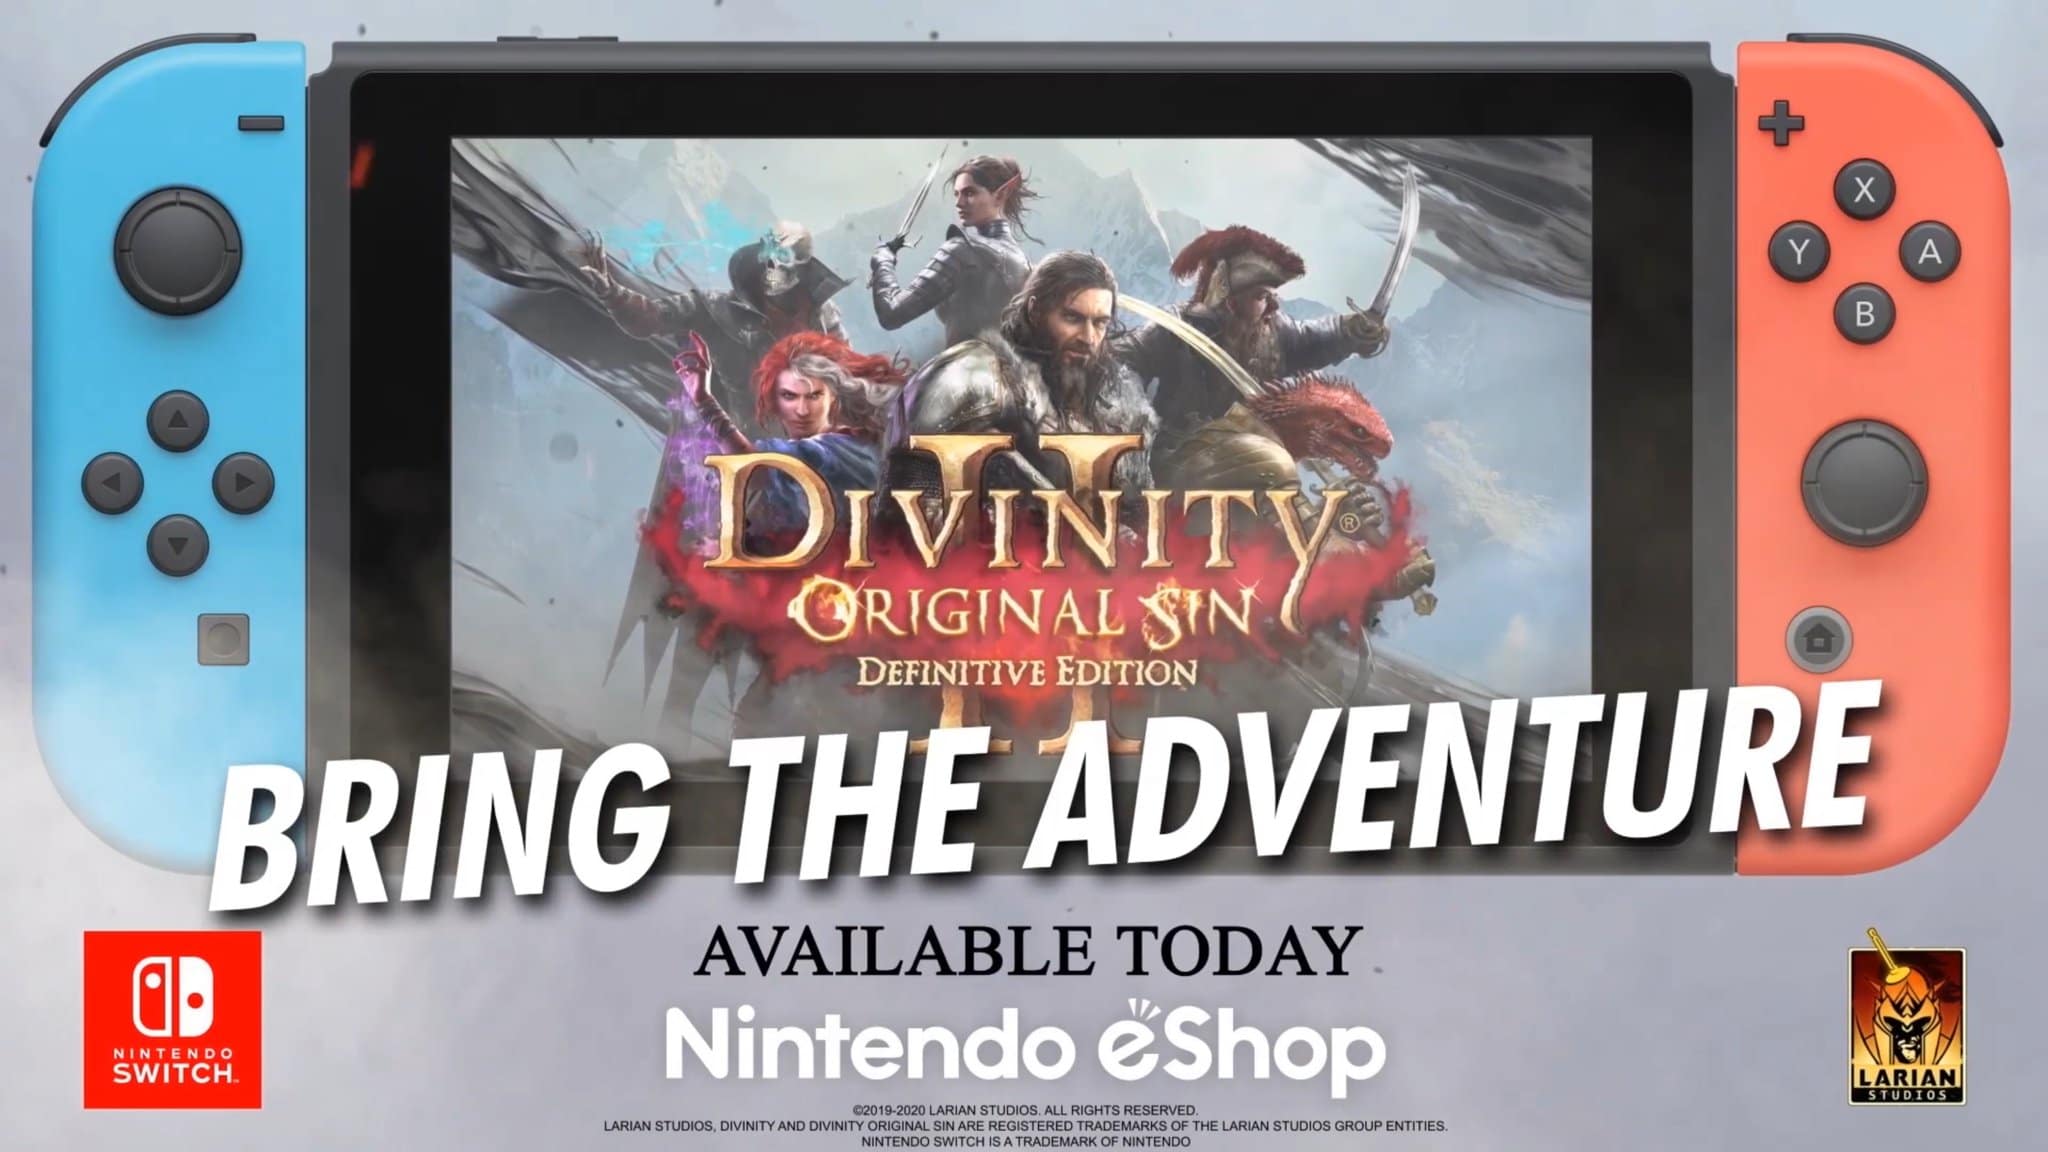 Divinity: Original Sin II – Definitive Edition ha sido anunciado para Nintendo Switch, disponible hoy